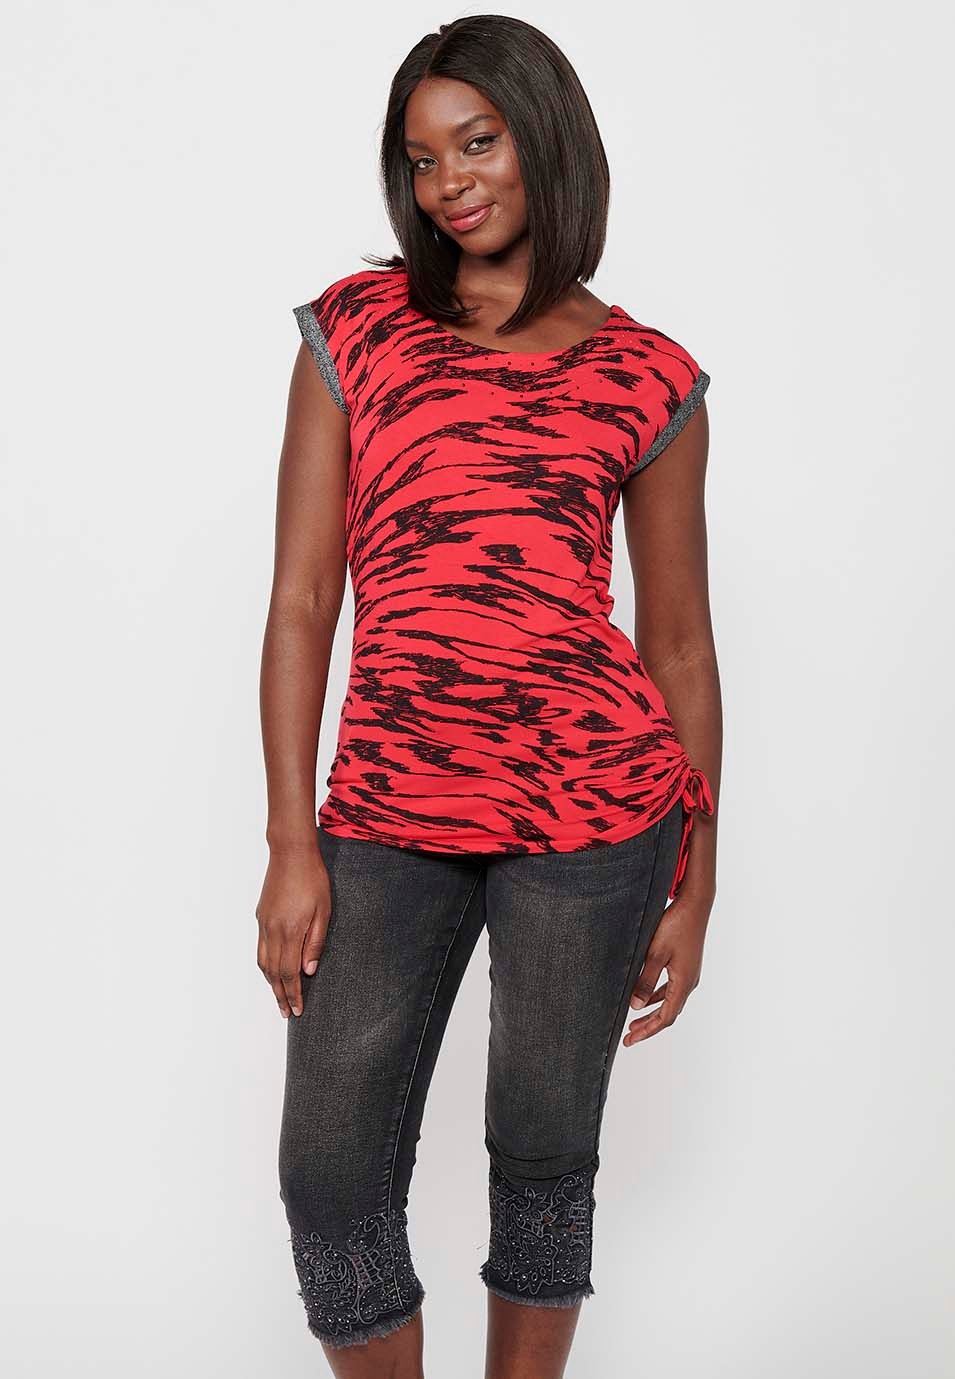 Camiseta sin mangas estampada, cuello redondo, color rojo para mujer 4